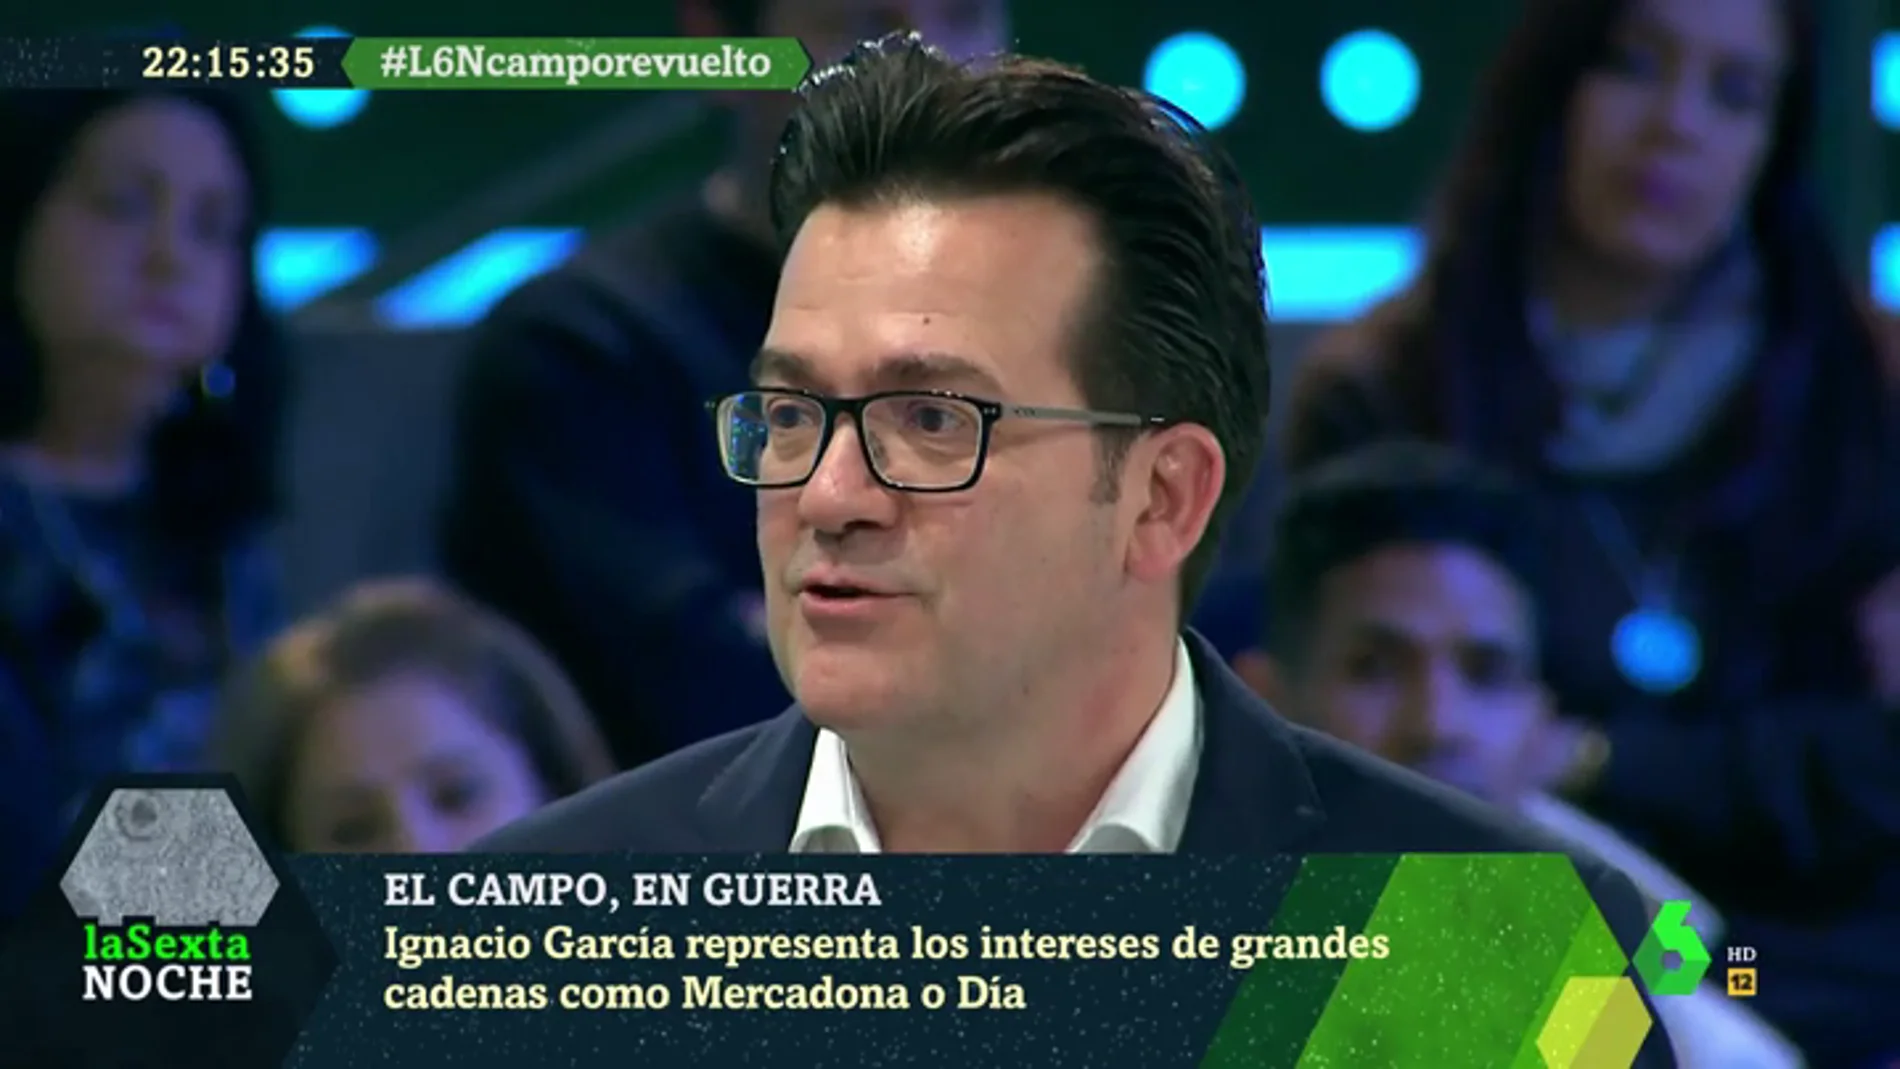 Ignacio García, distribuidor: "Si los precios que pusiéramos no fueran competitivos el consumidor cambiaría de establecimiento"